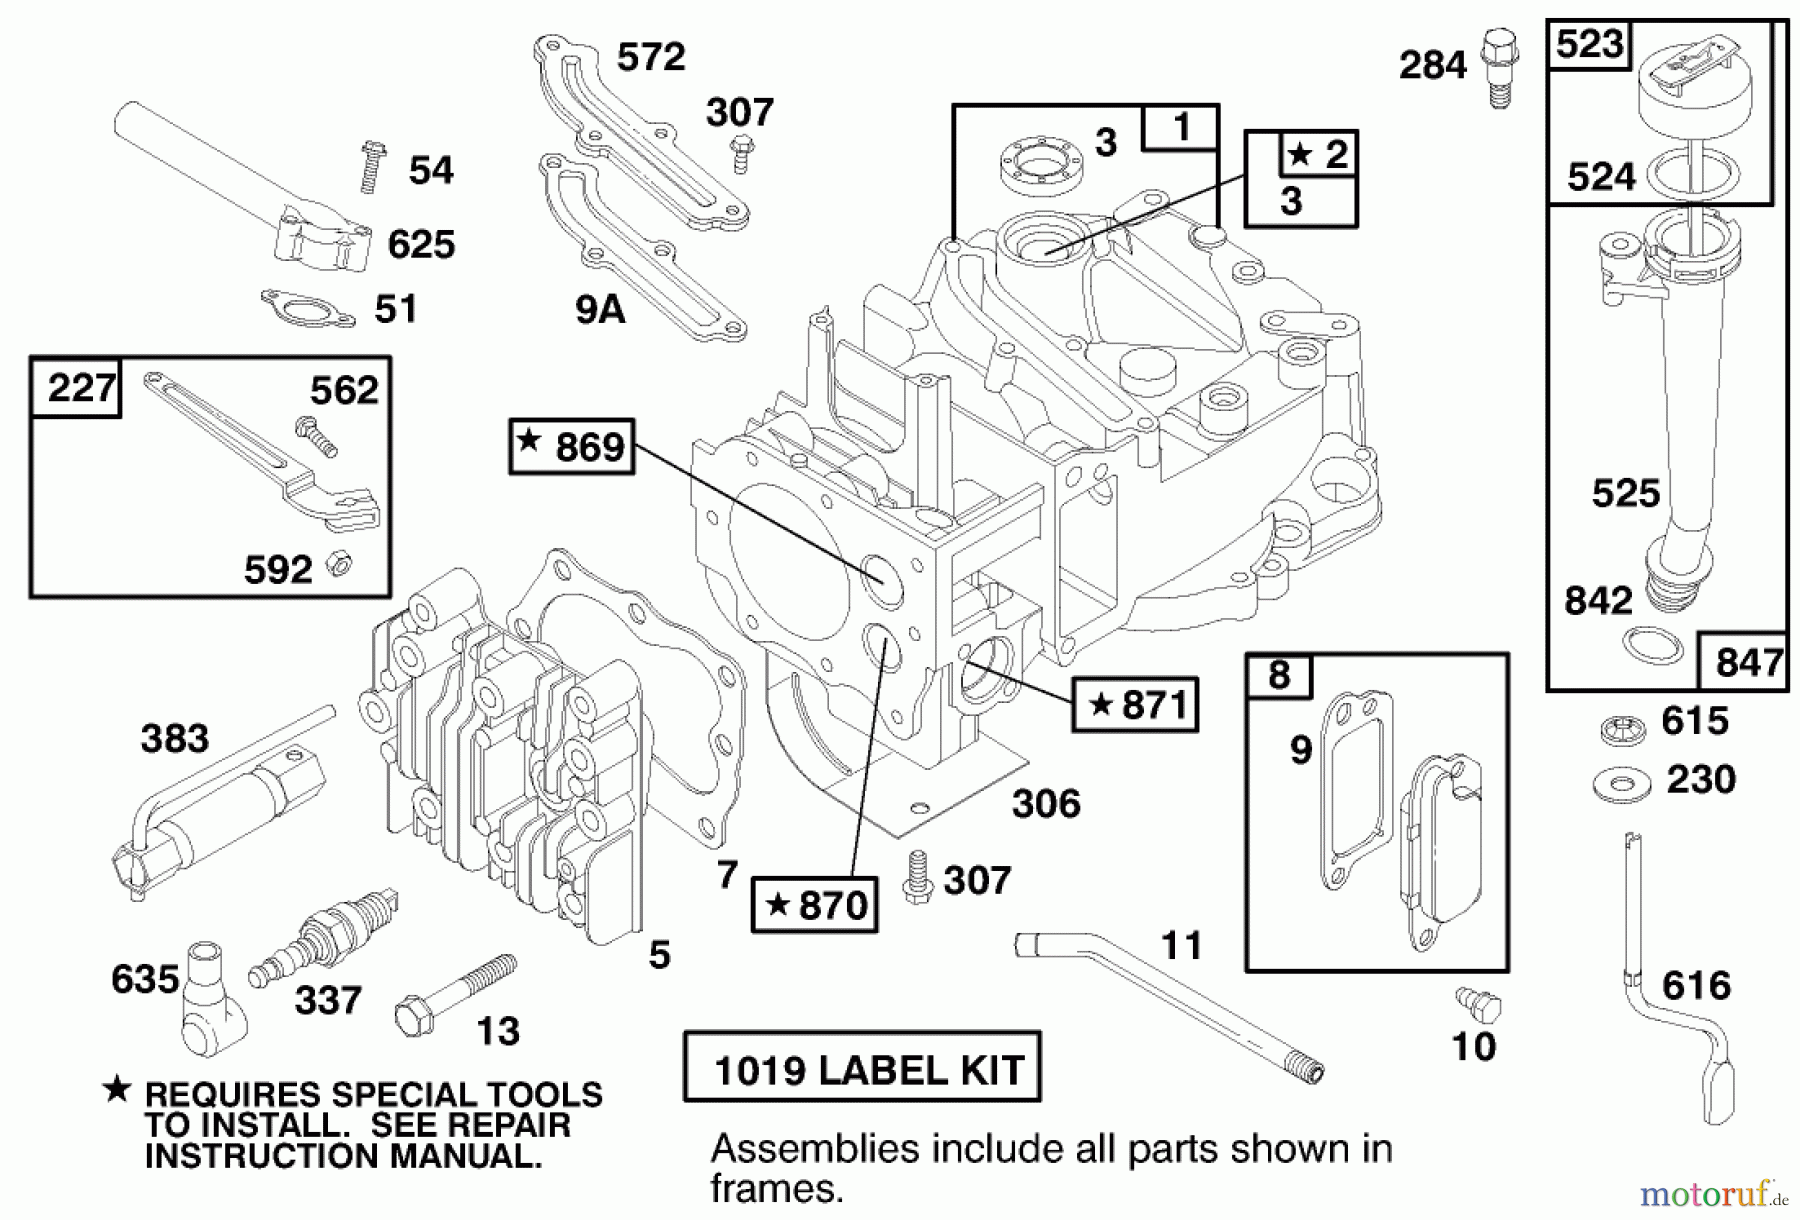  Toro Neu Mowers, Walk-Behind Seite 1 20448 - Toro Lawnmower, 1997 (7900001-7999999) ENGINE BRIGGS & STRATTON MODEL 12H802-0658-01 #1